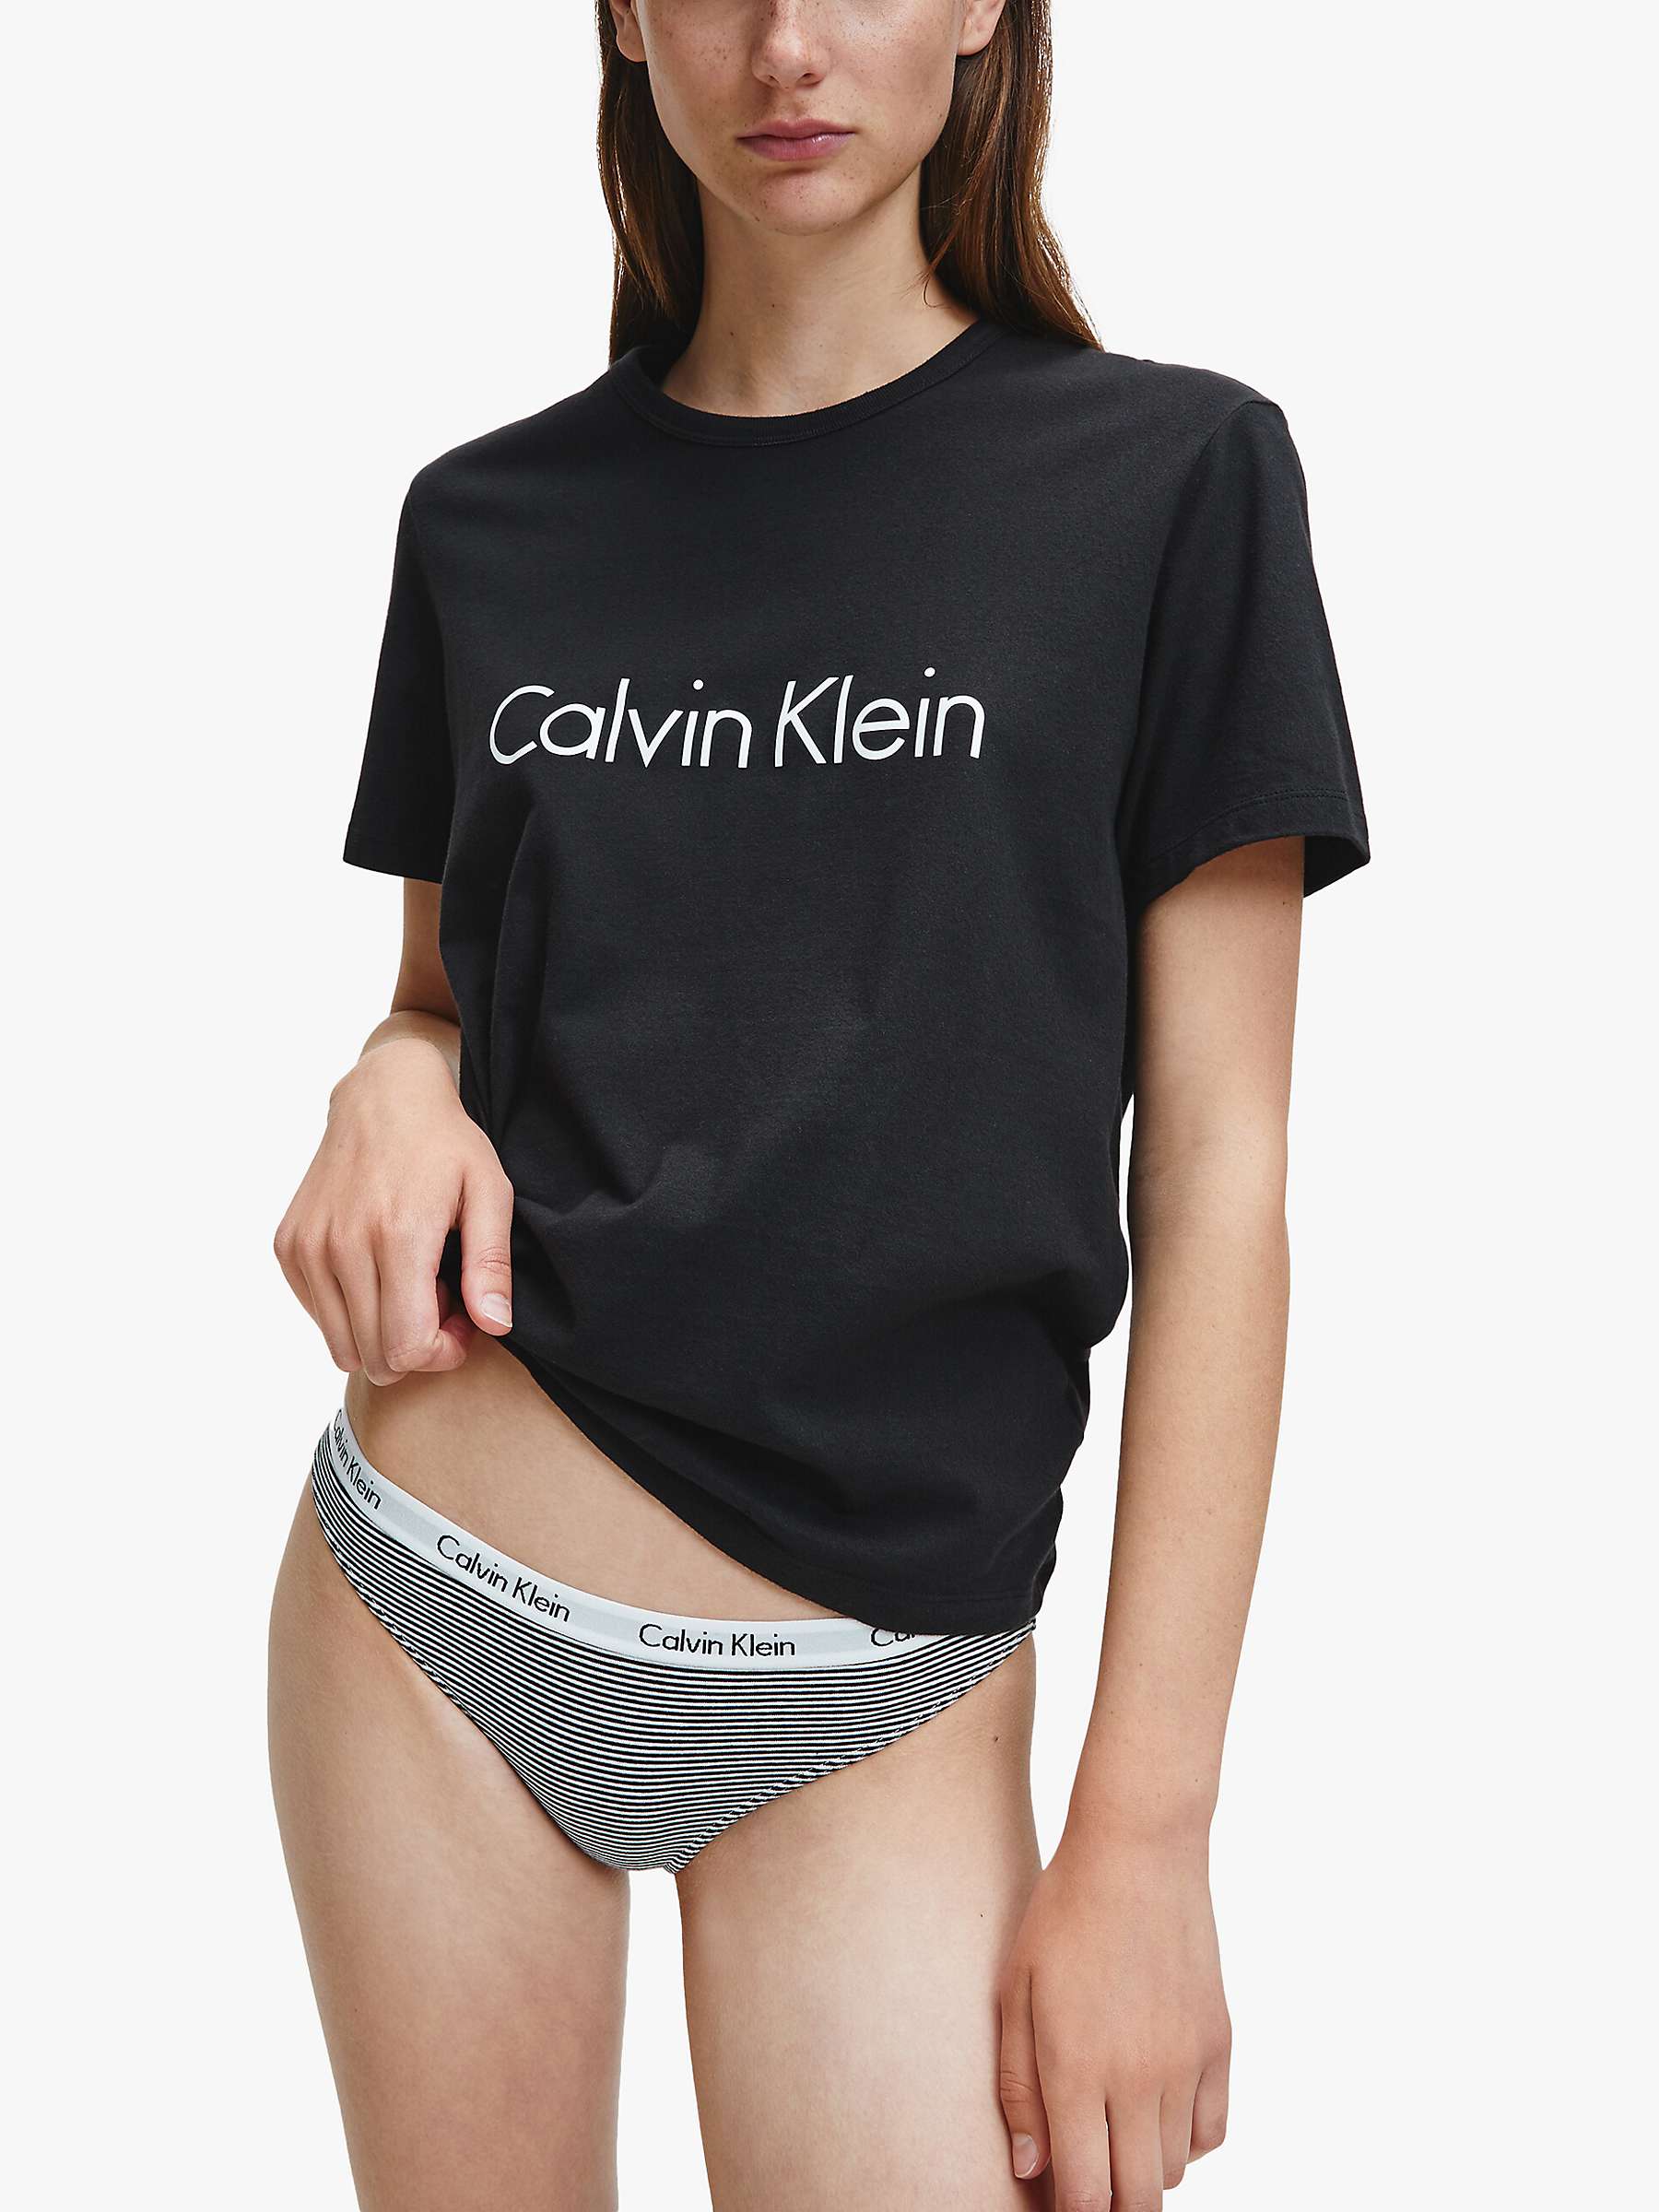 Buy Calvin Klein Short Sleeve Crew Neck Pyjama Top Online at johnlewis.com